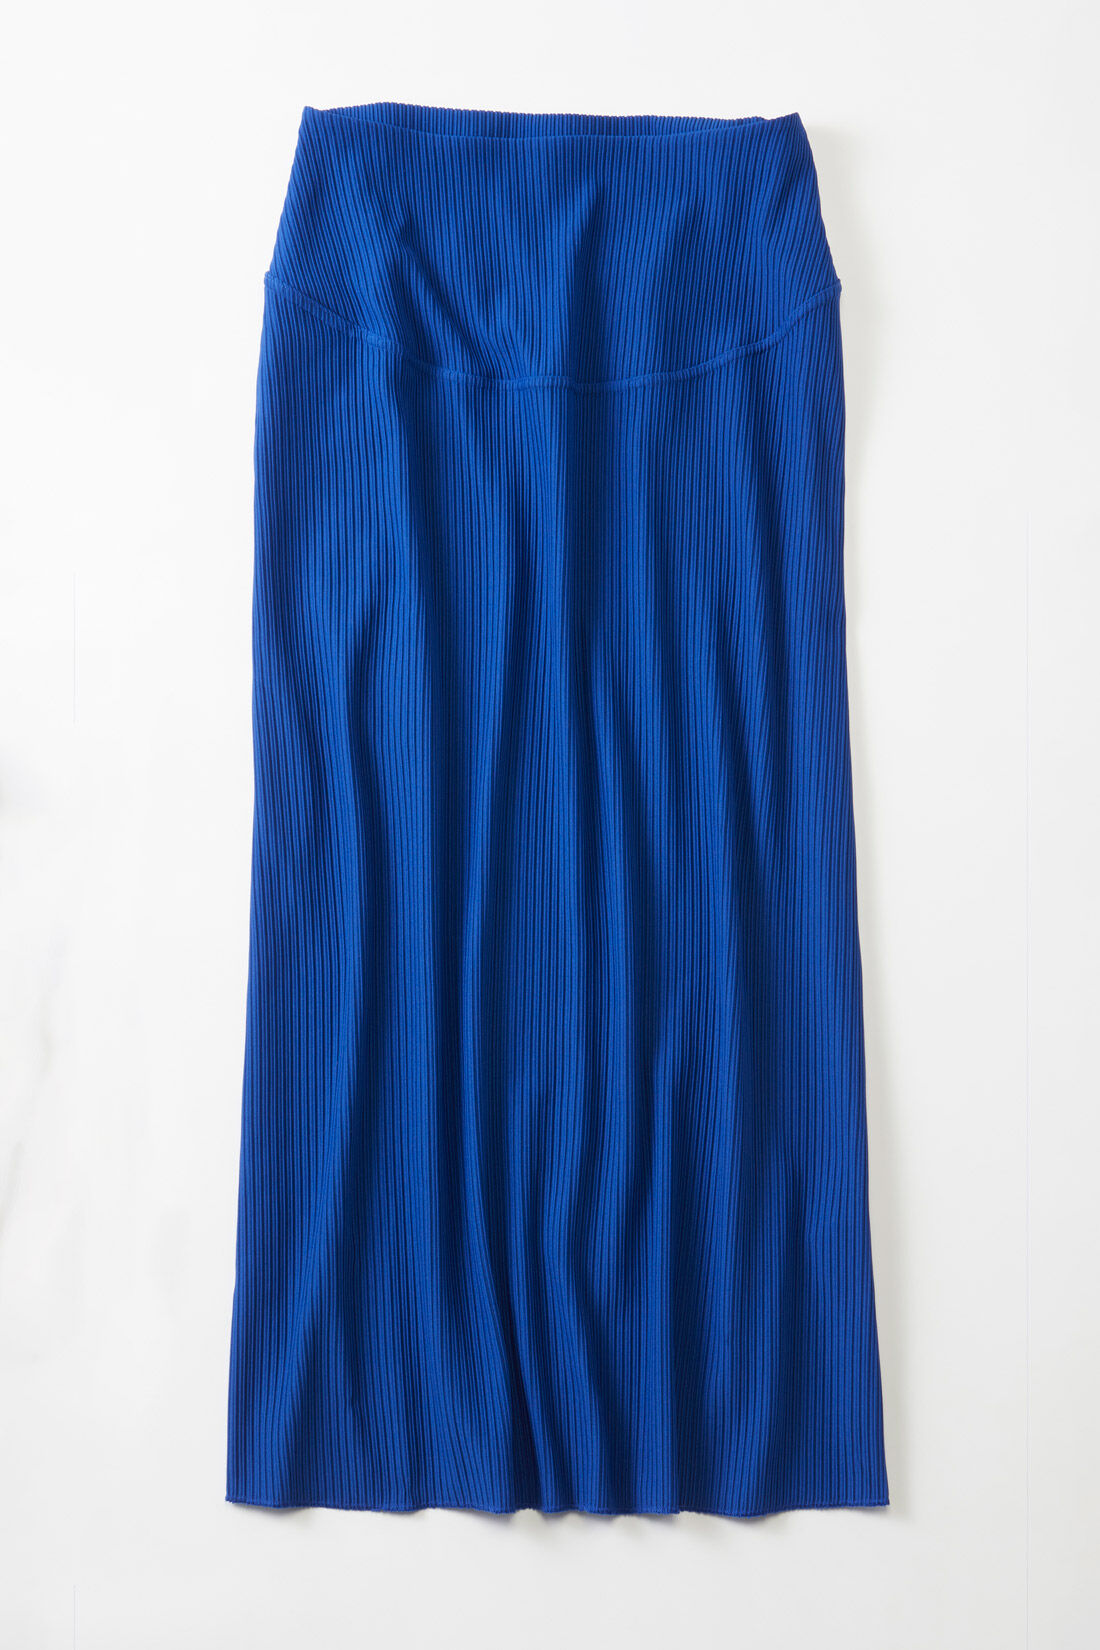 フェリシモMama|Moredde　リップルカットソー素材がらくちんきれいな　産前産後使えるIラインスカート〈ブルー〉|リブニットのような凹凸があるリップルカットソー素材。